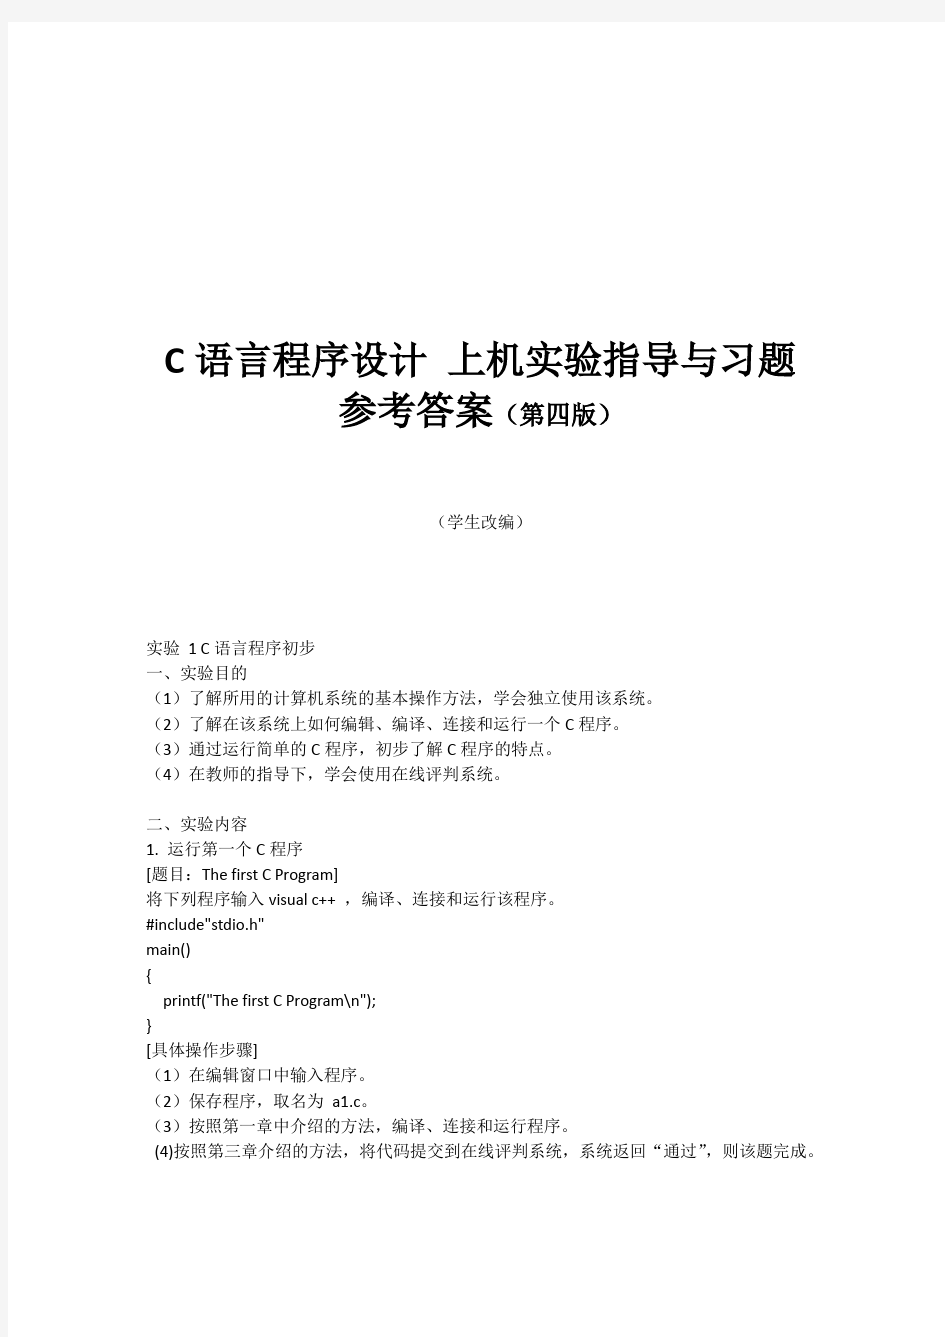 华南农业大学C语言实验上机实验第四版参考答案.